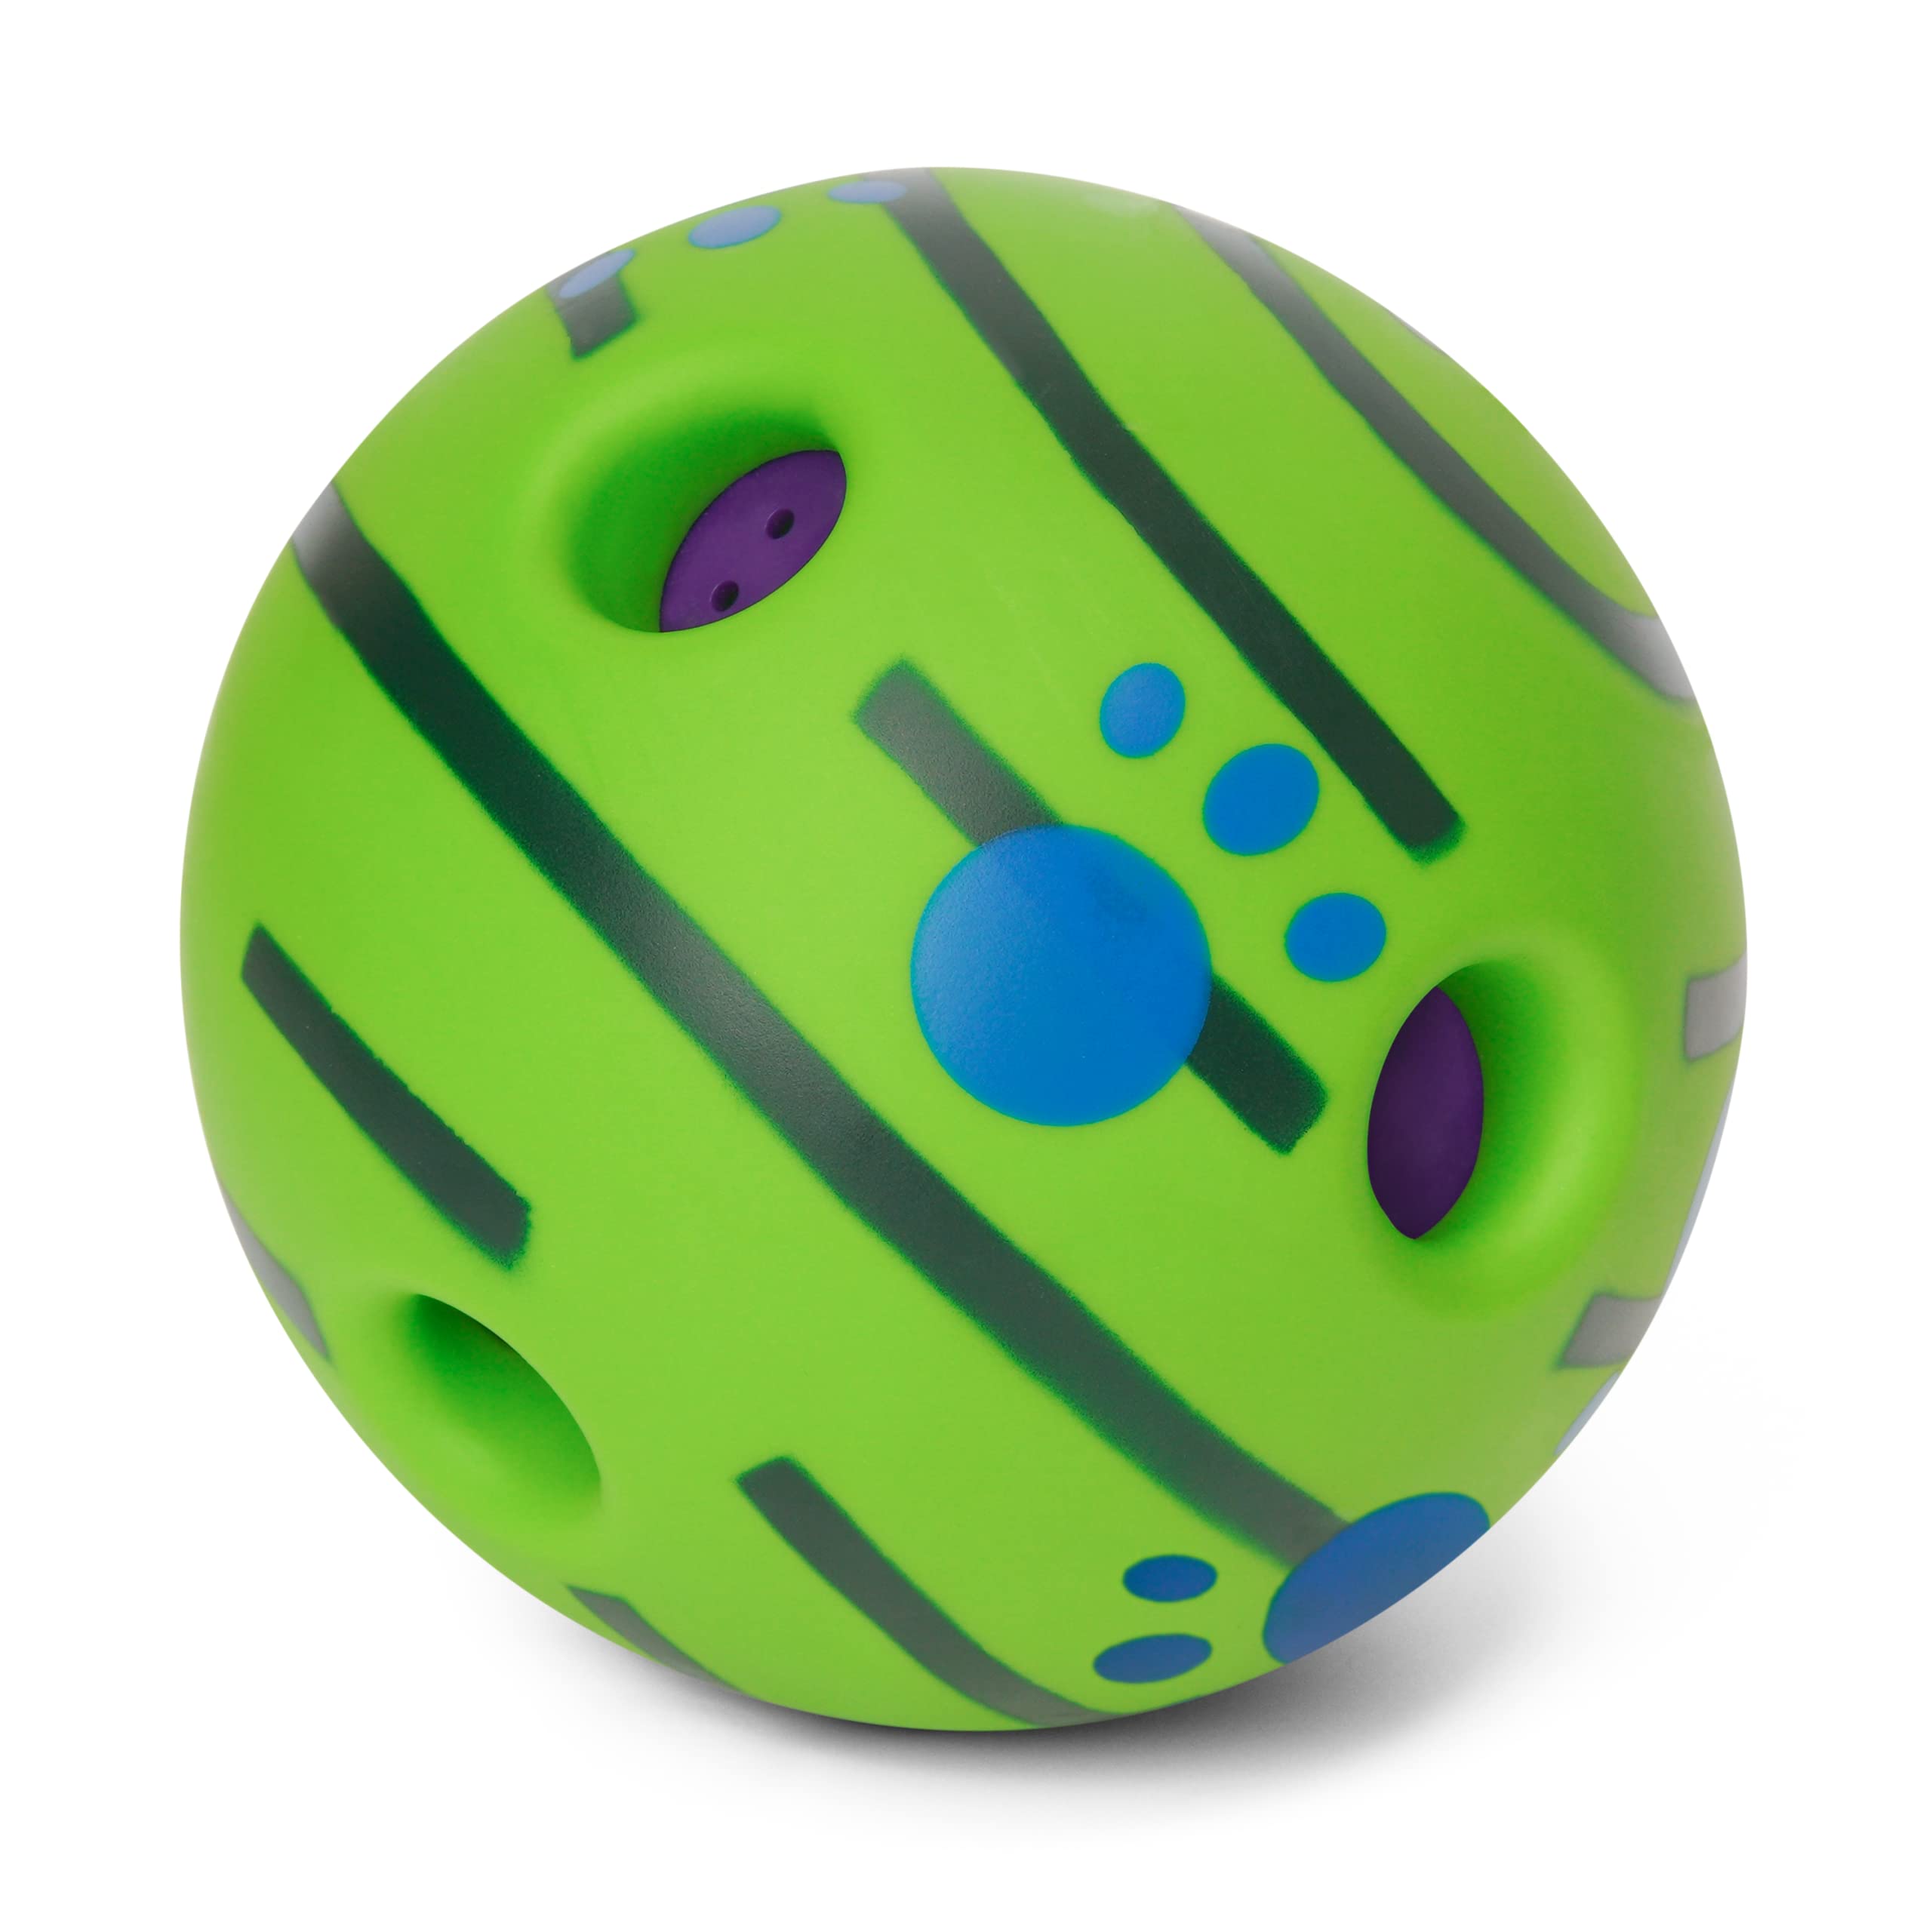 Hundespielzeug Ball, Ein Robustes Kaubares Hundespielzeug Aus Naturkautschuk. Ein Quietschball Für Große Und kleine Hunde 14cm